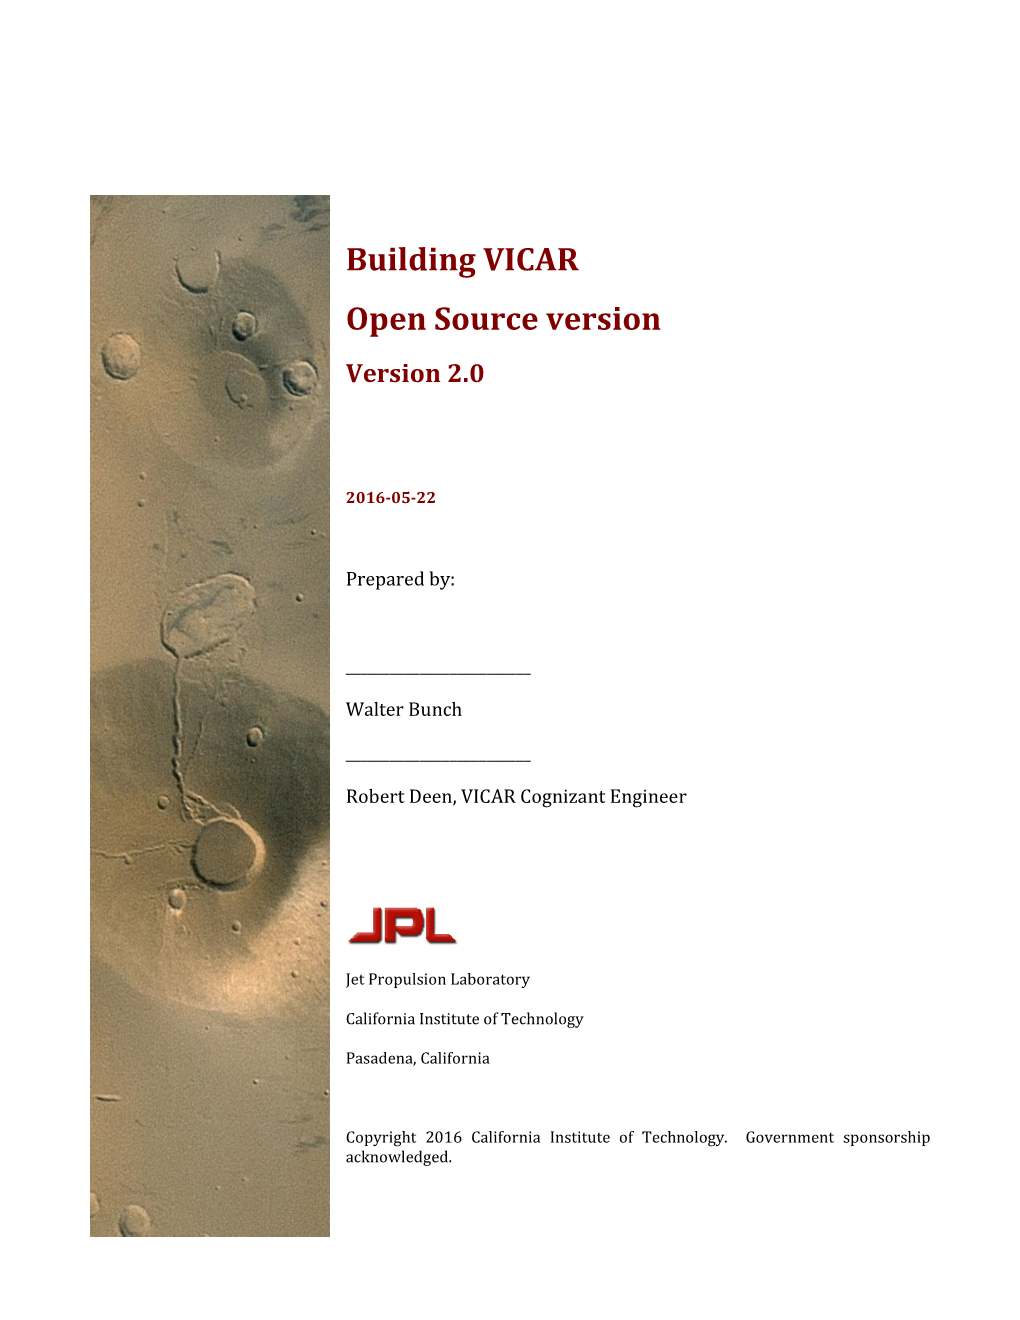 Building VICAR Open Source Version Version 2.0